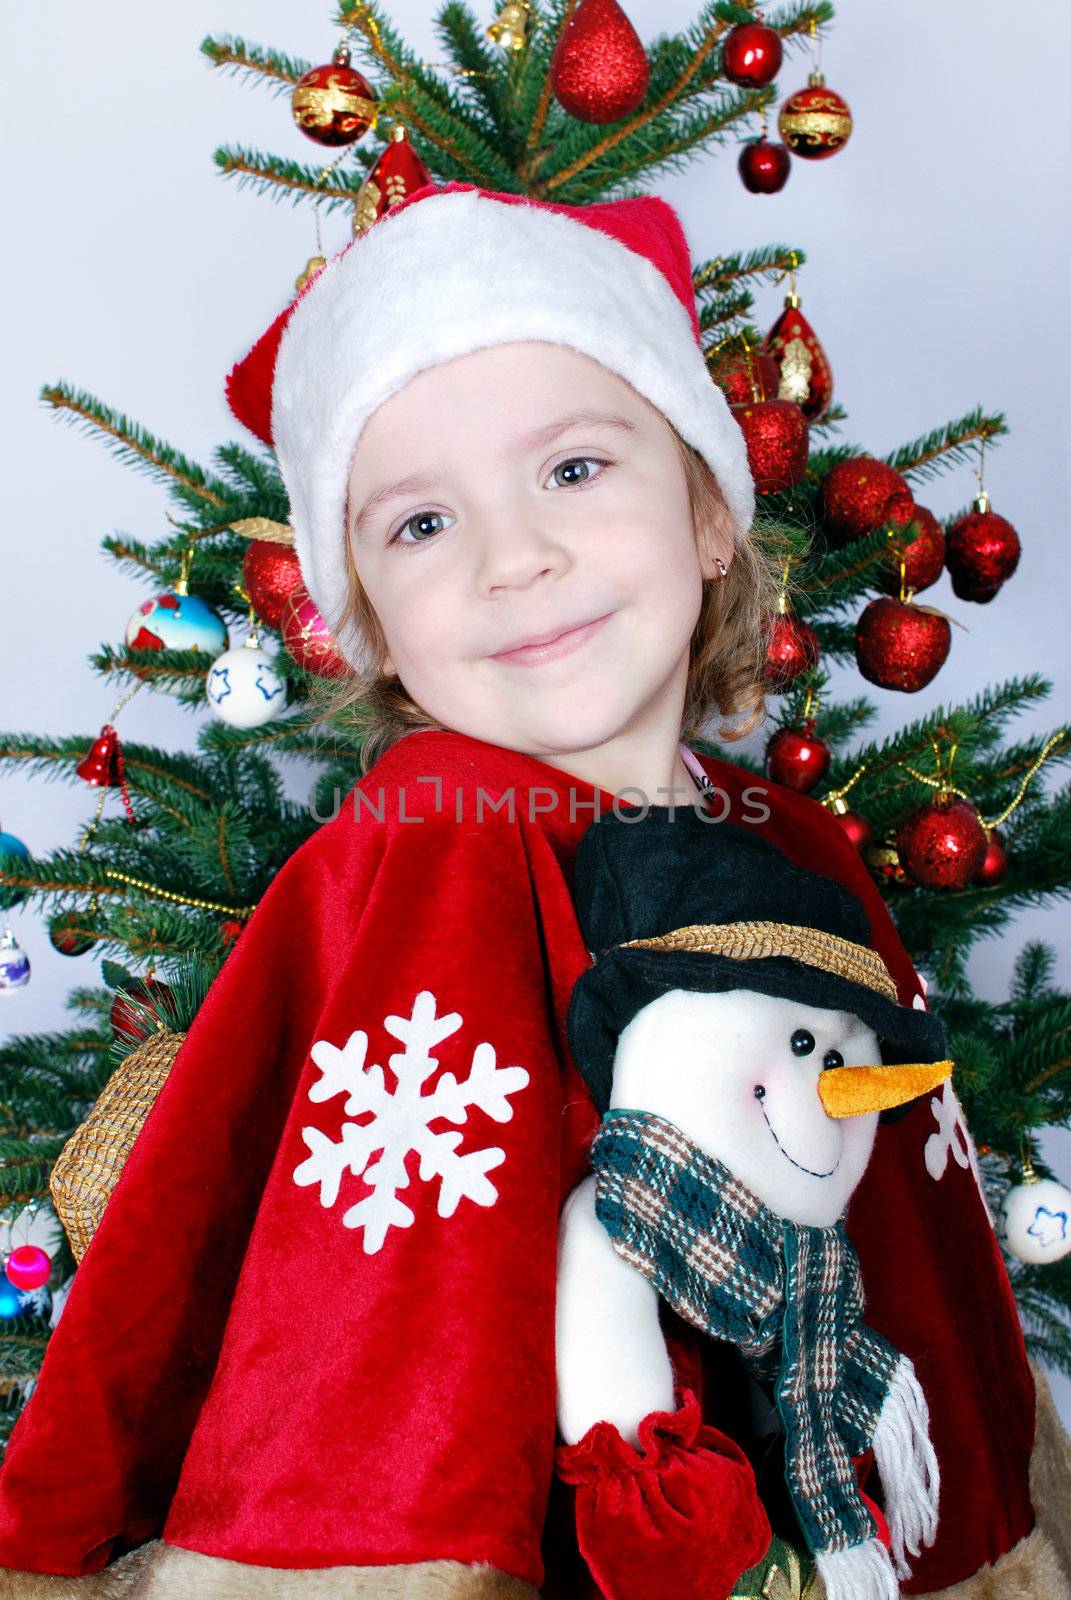 beauty little girl Santa Claus by goce